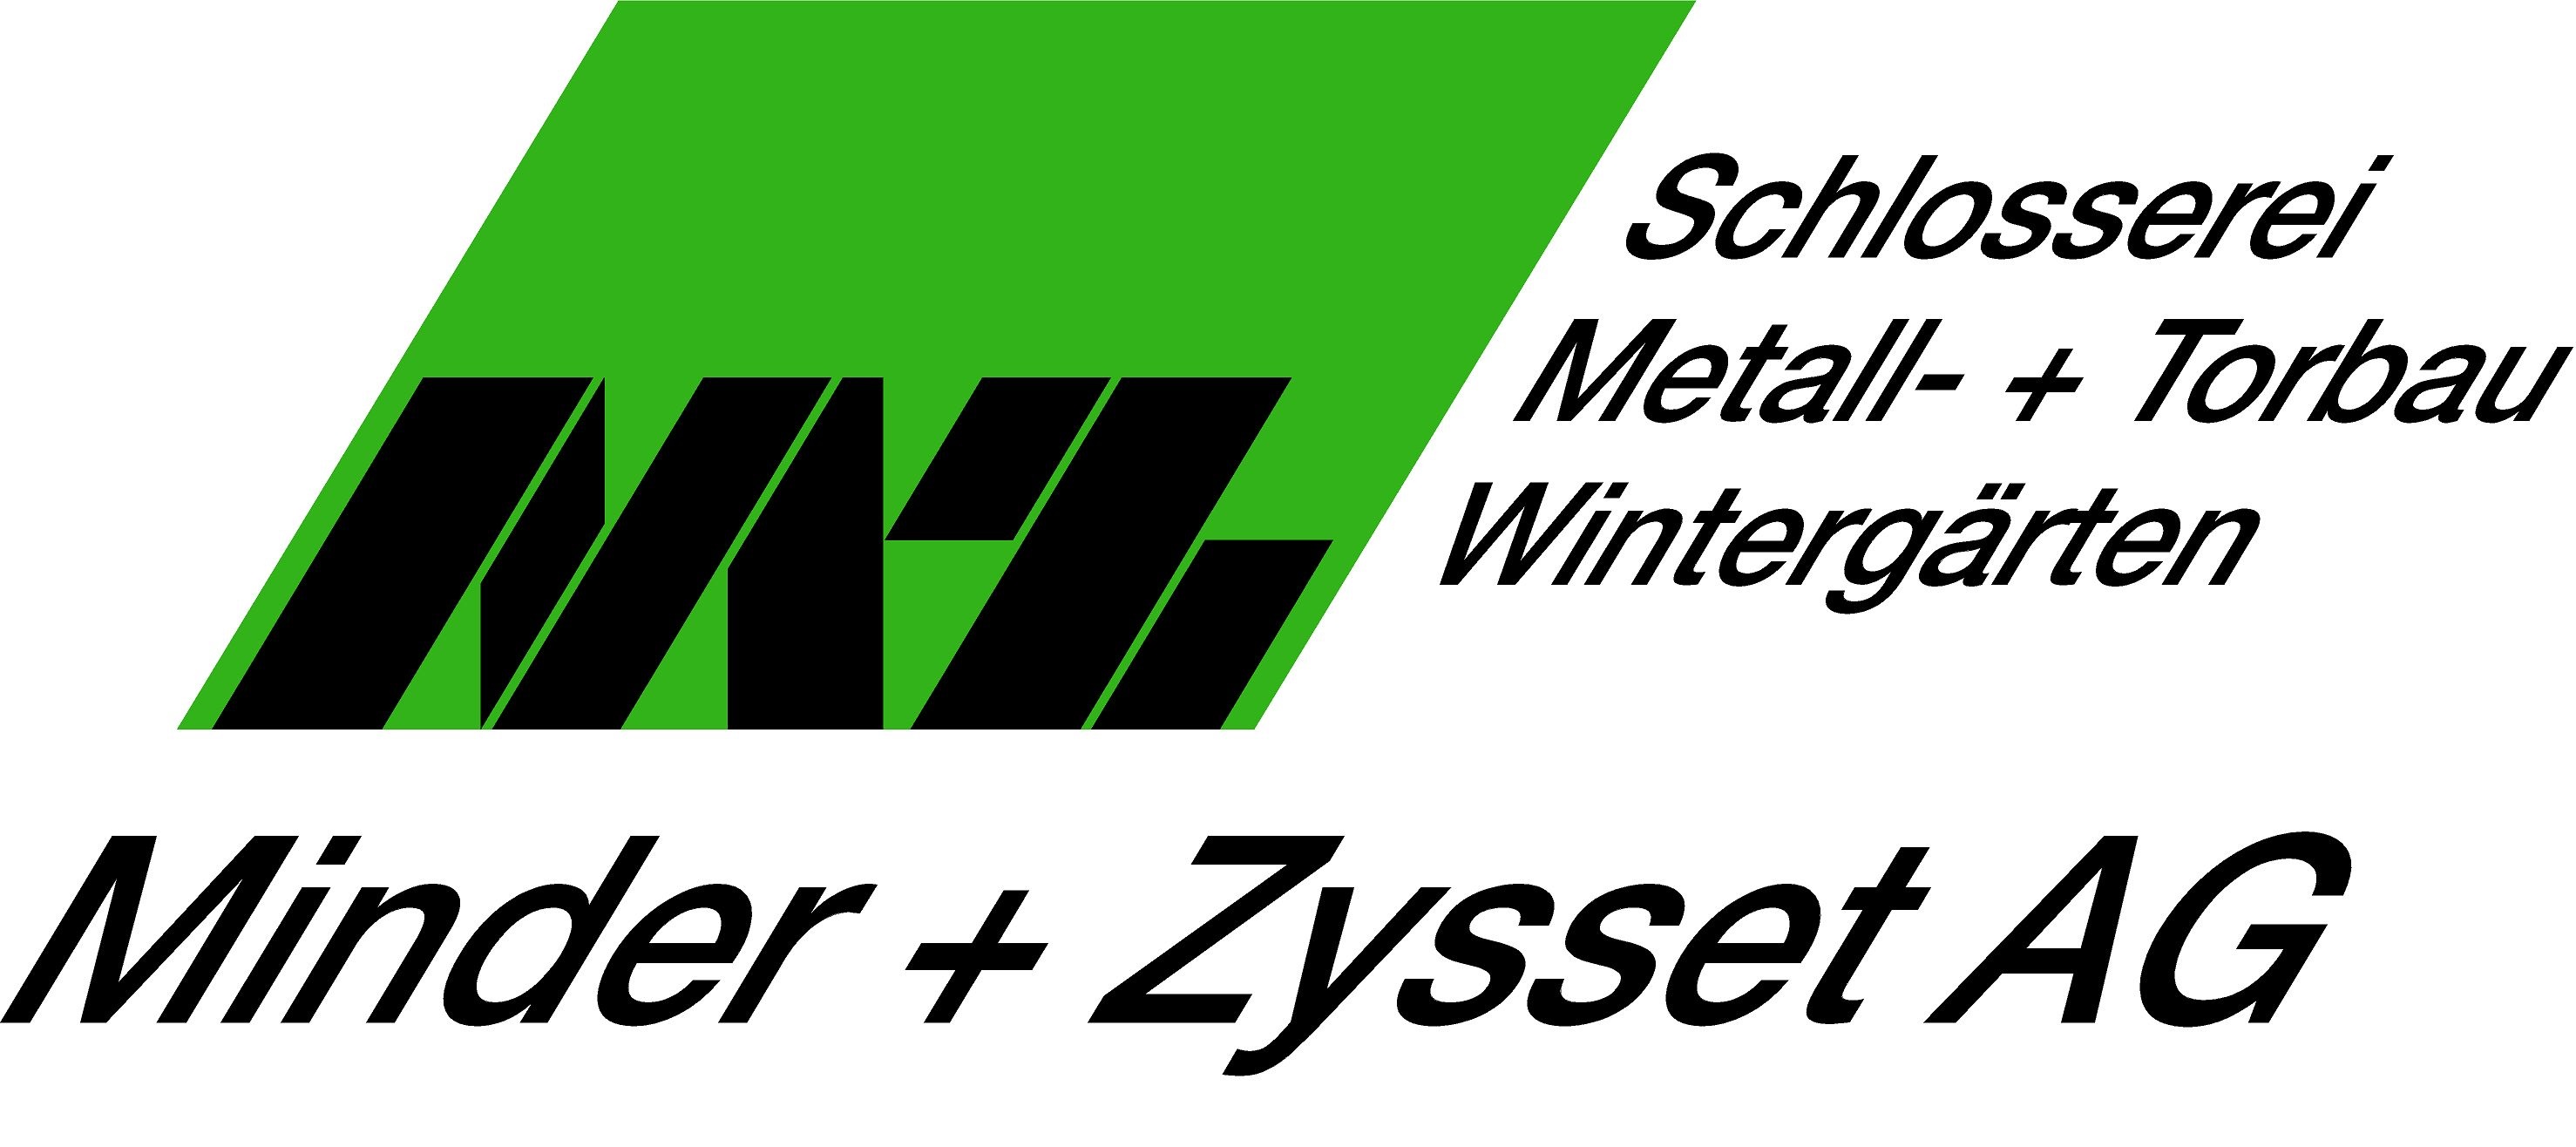 Minder + Zysset AG Metallbau